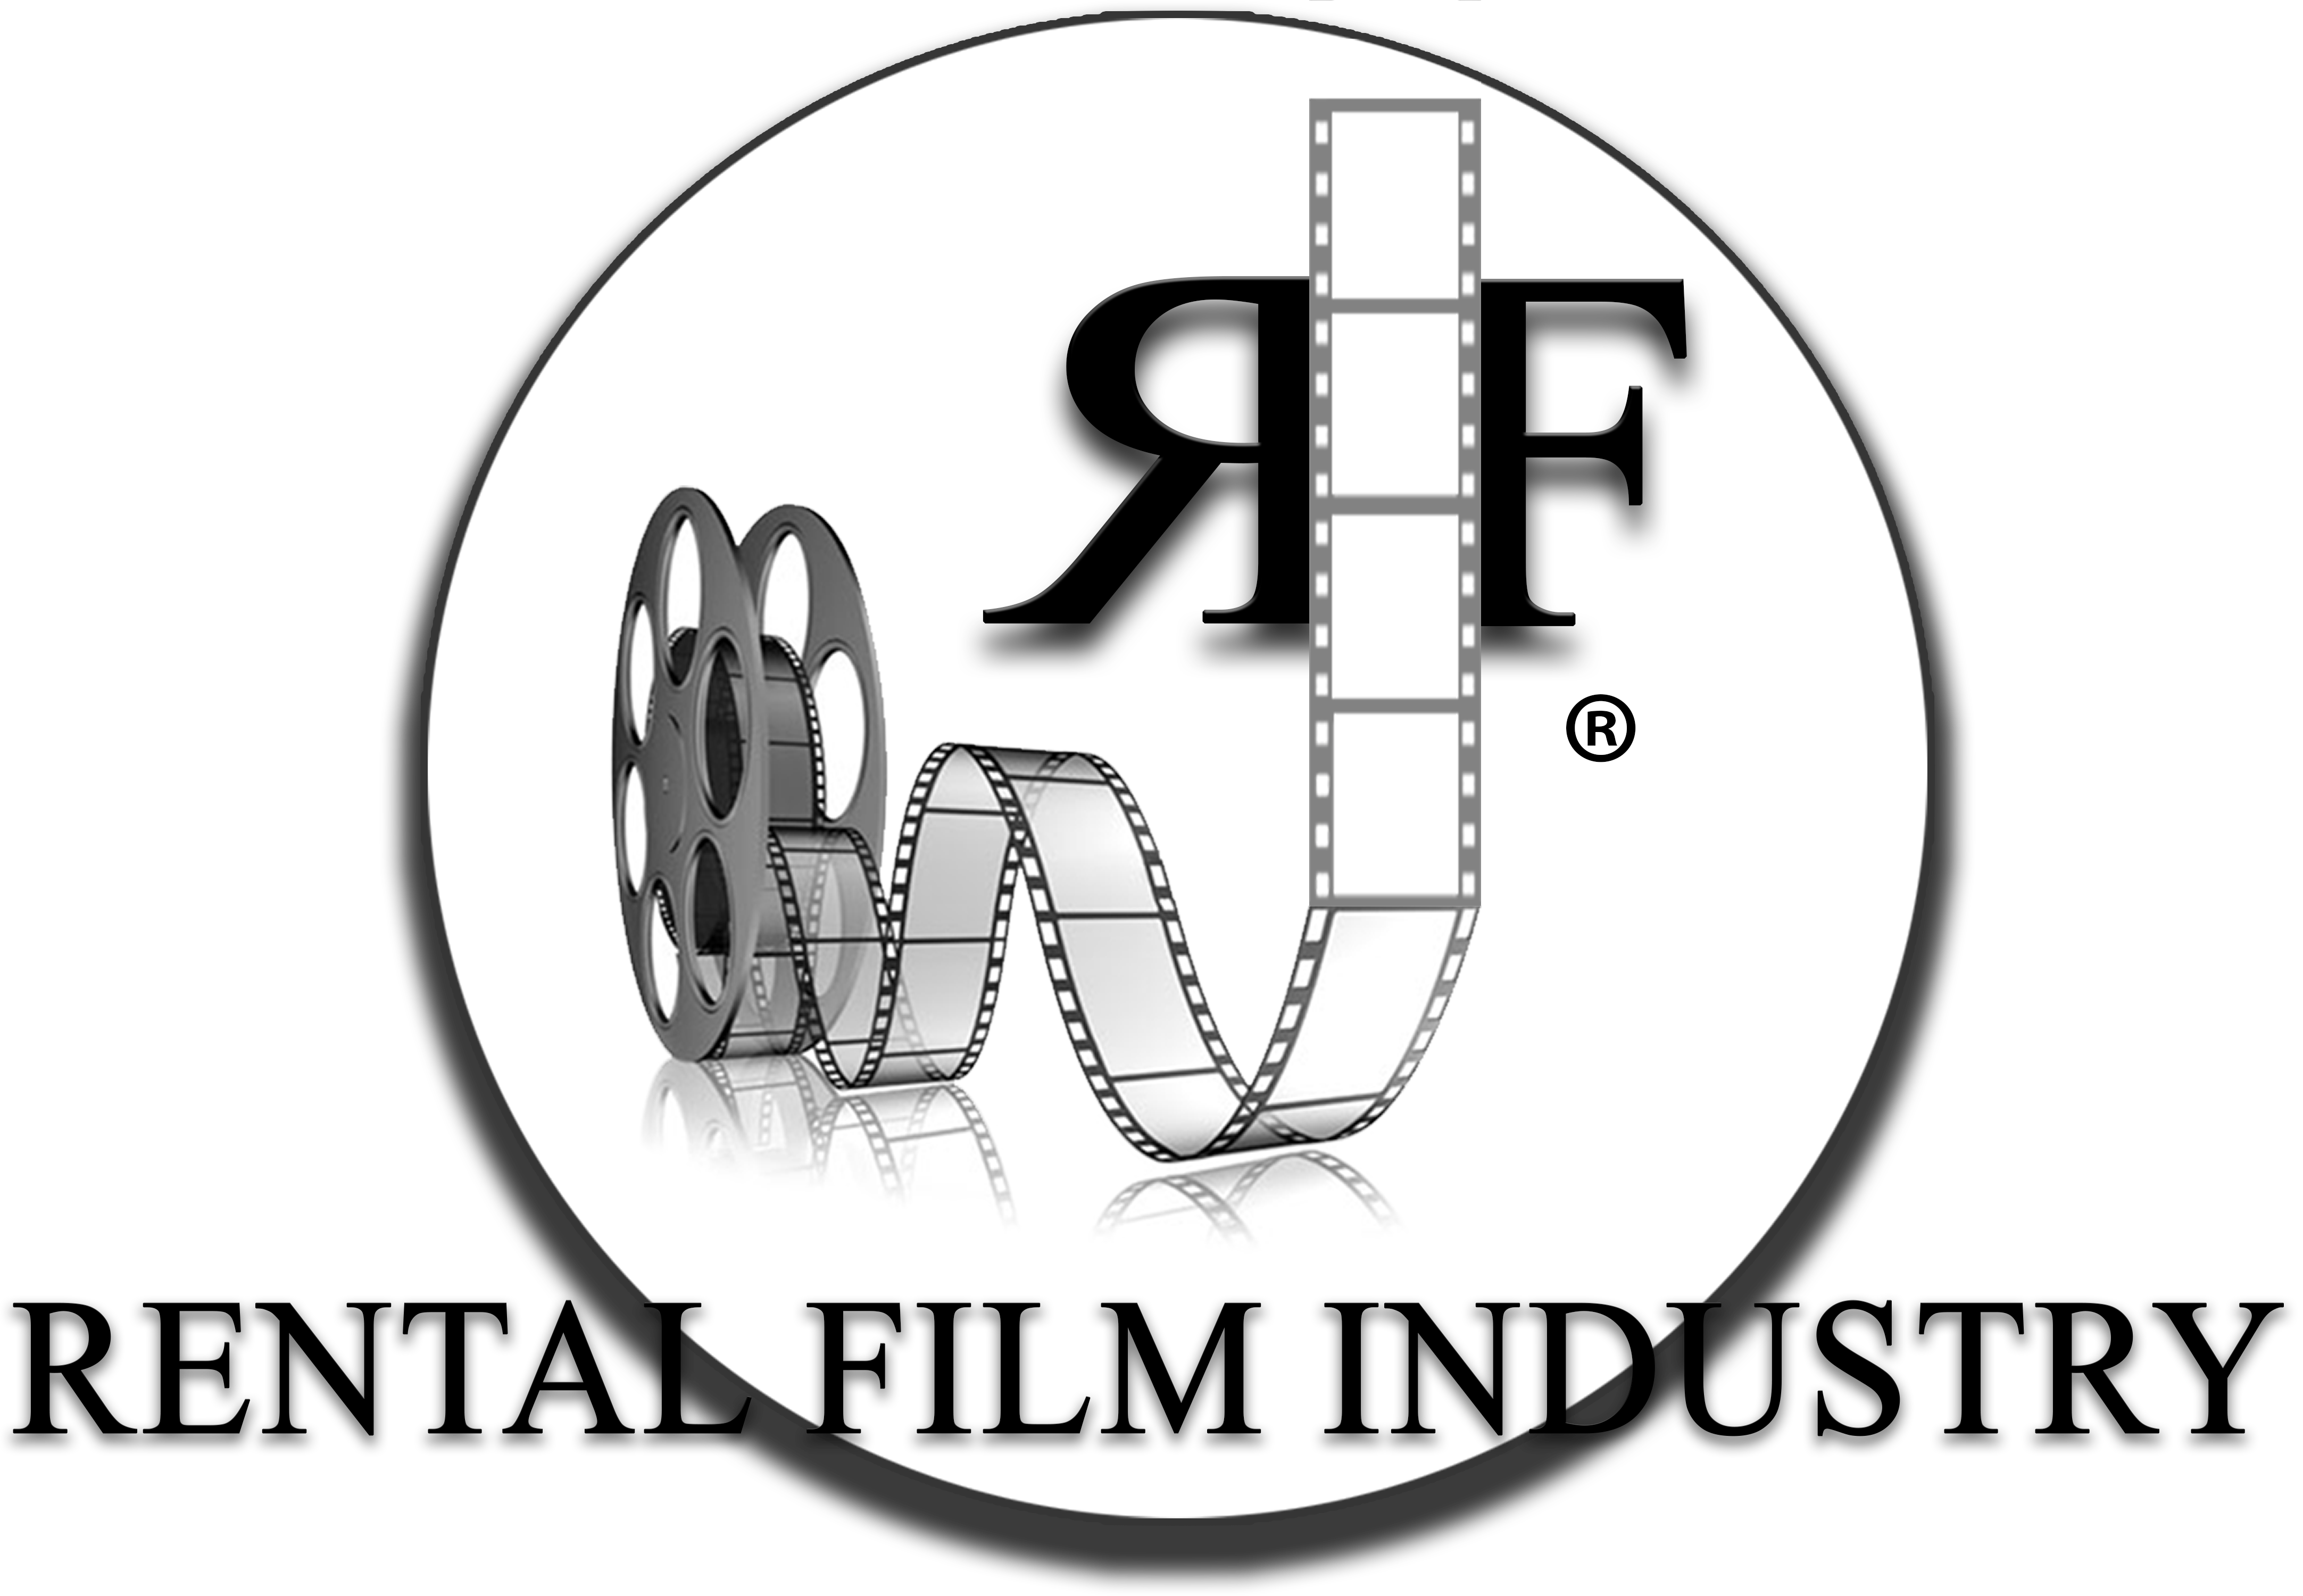 Rental Film Industry